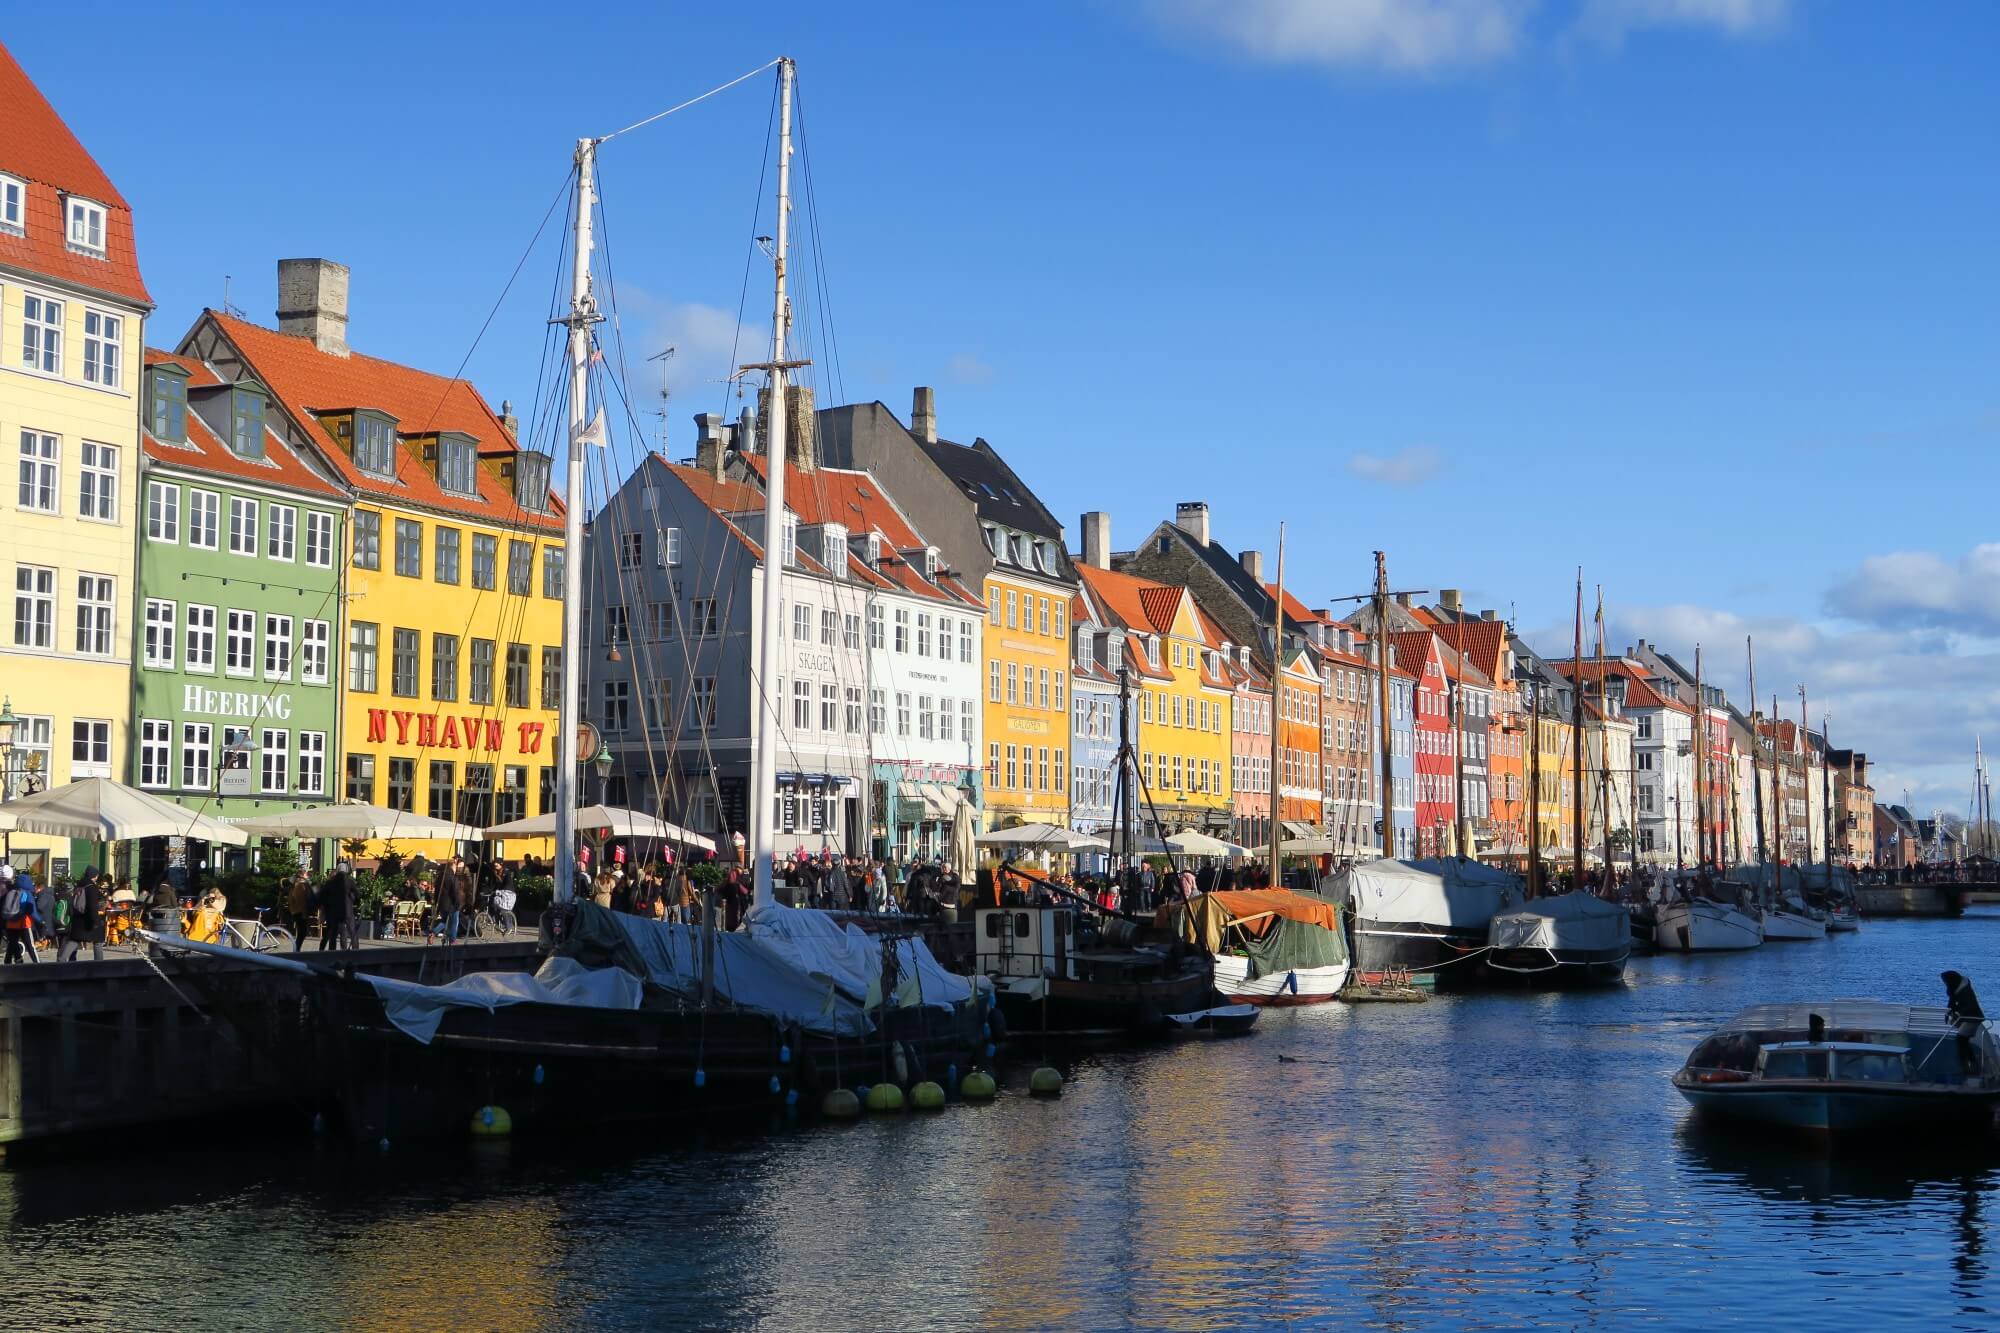 【哥本哈根自由行懶人包】哥本哈根住宿、景點、行程、美食、交通自助攻略